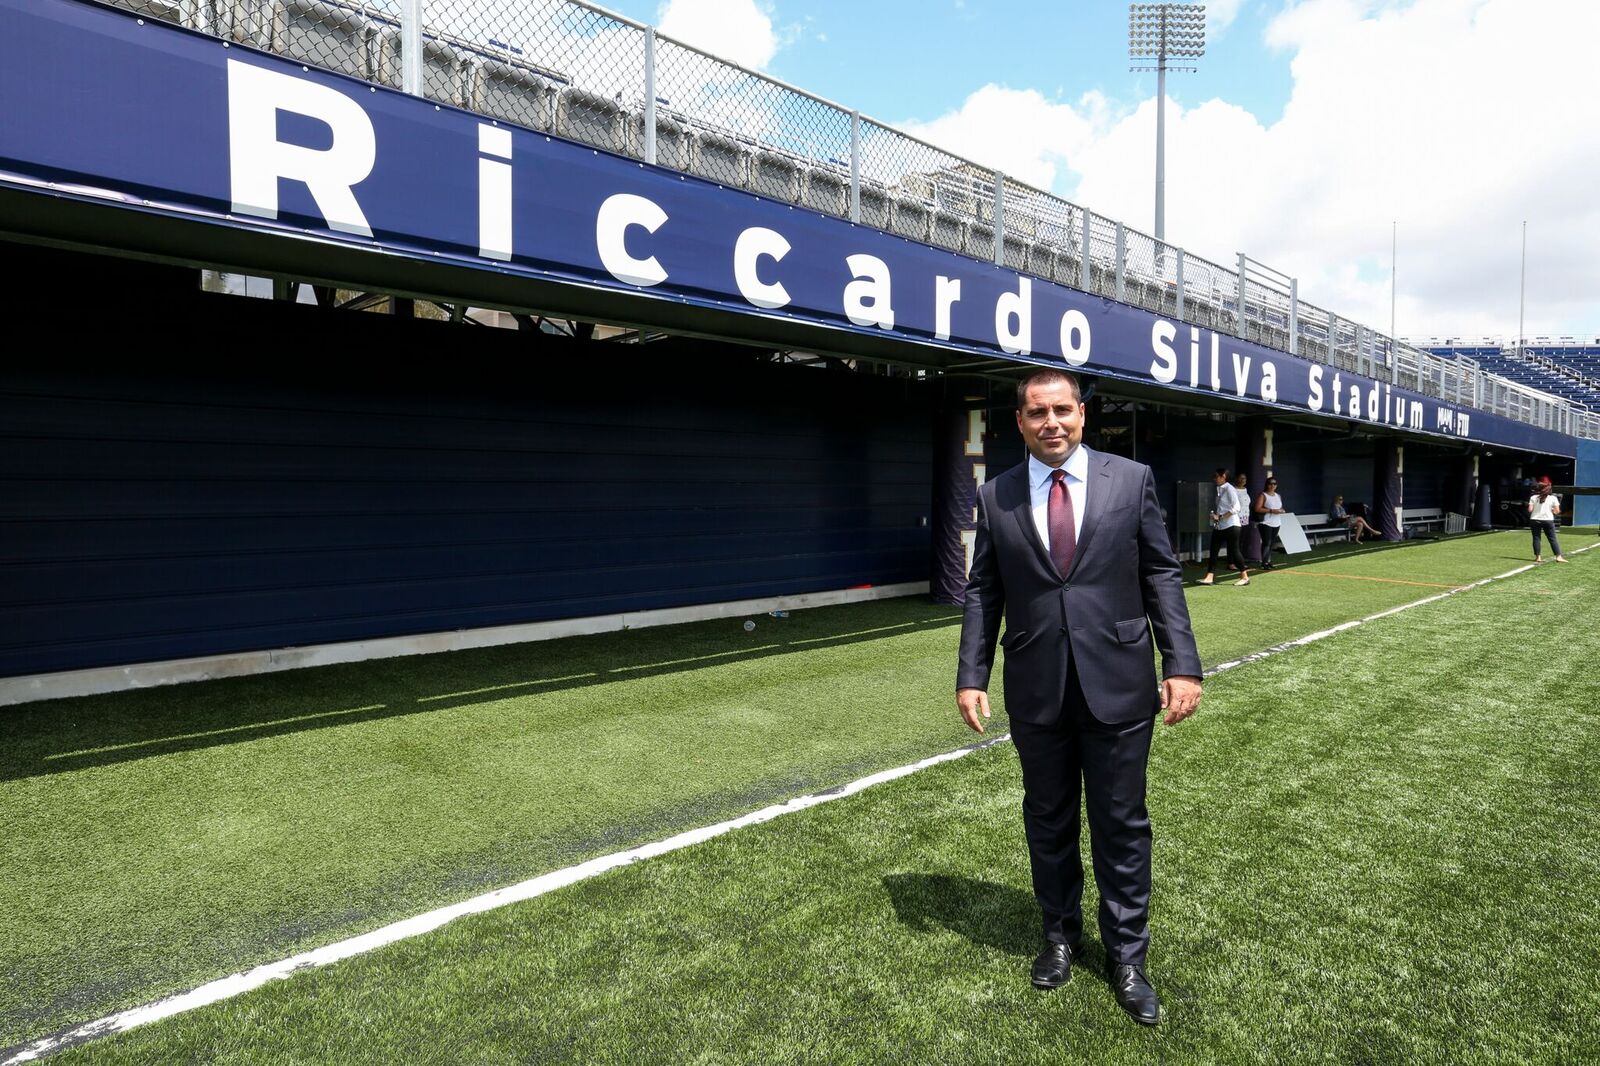 Riccardo Silva at Riccardo Silva Stadium